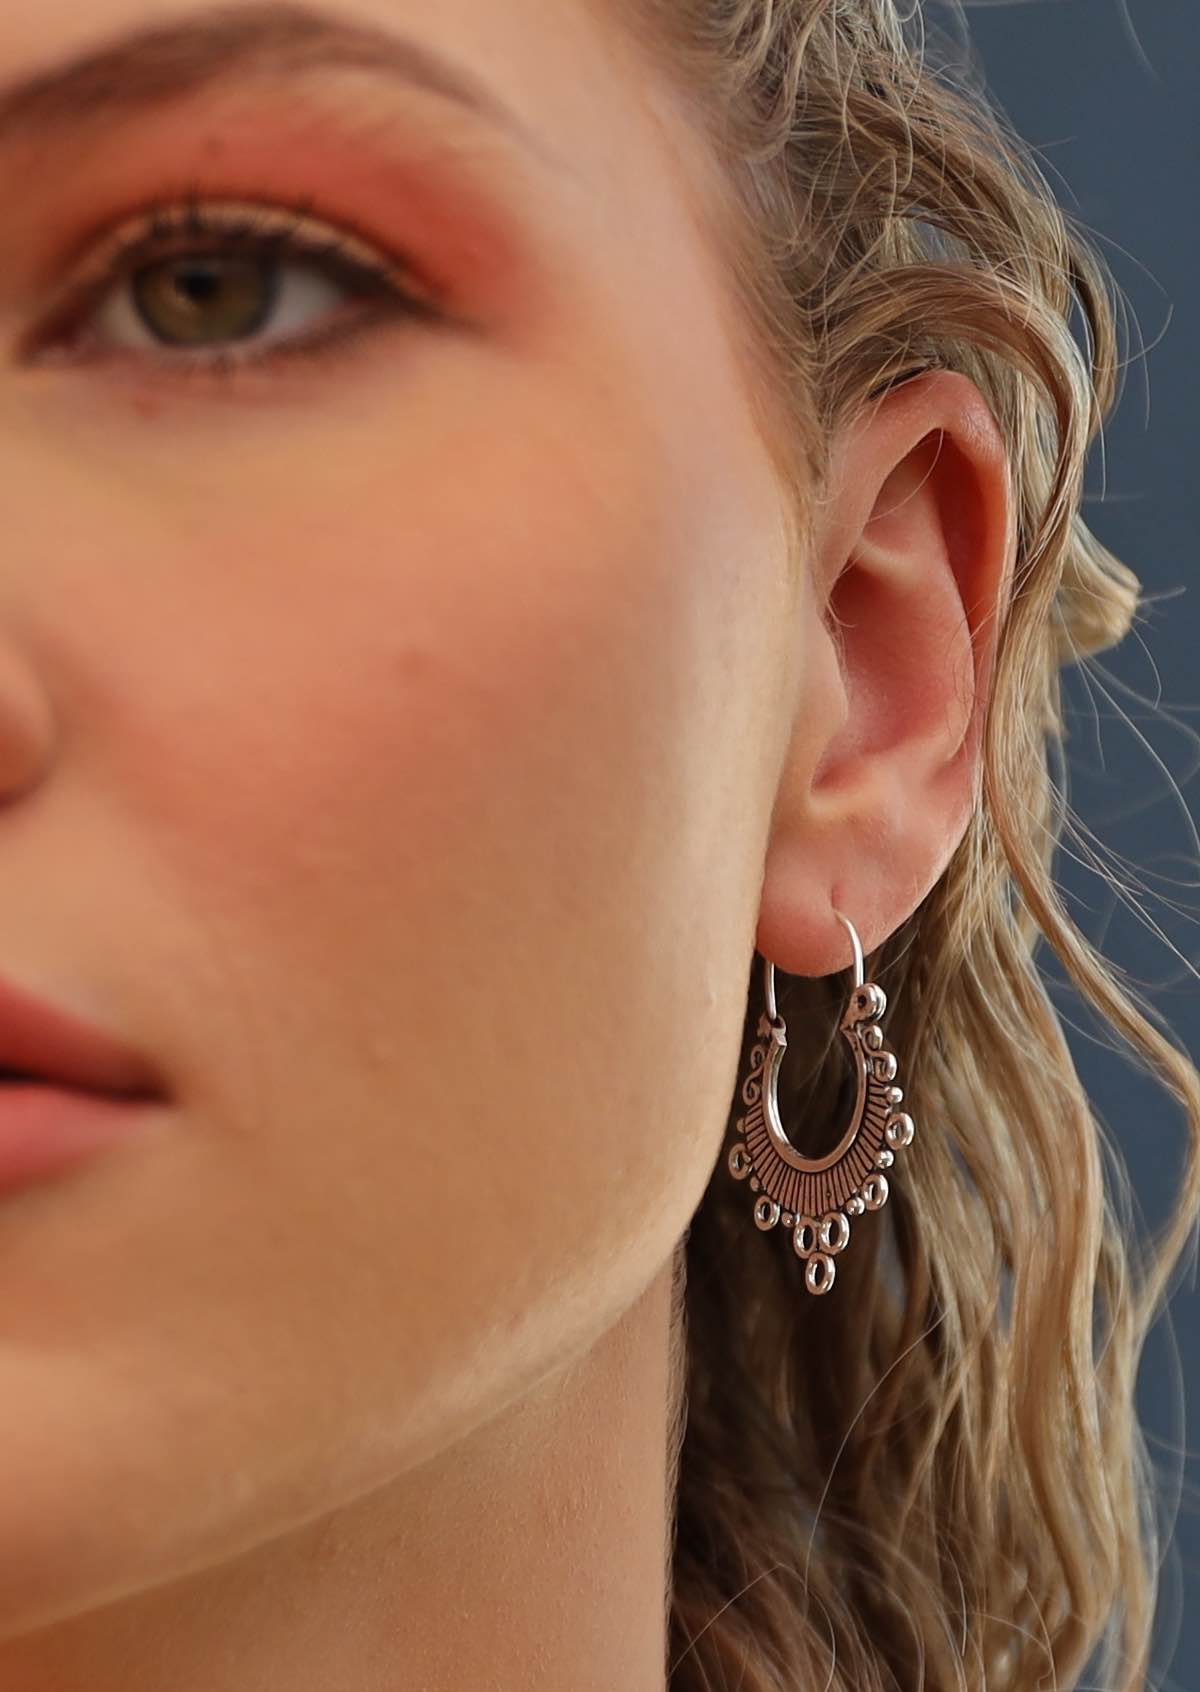 woman wearing silver hill tribe earrings 